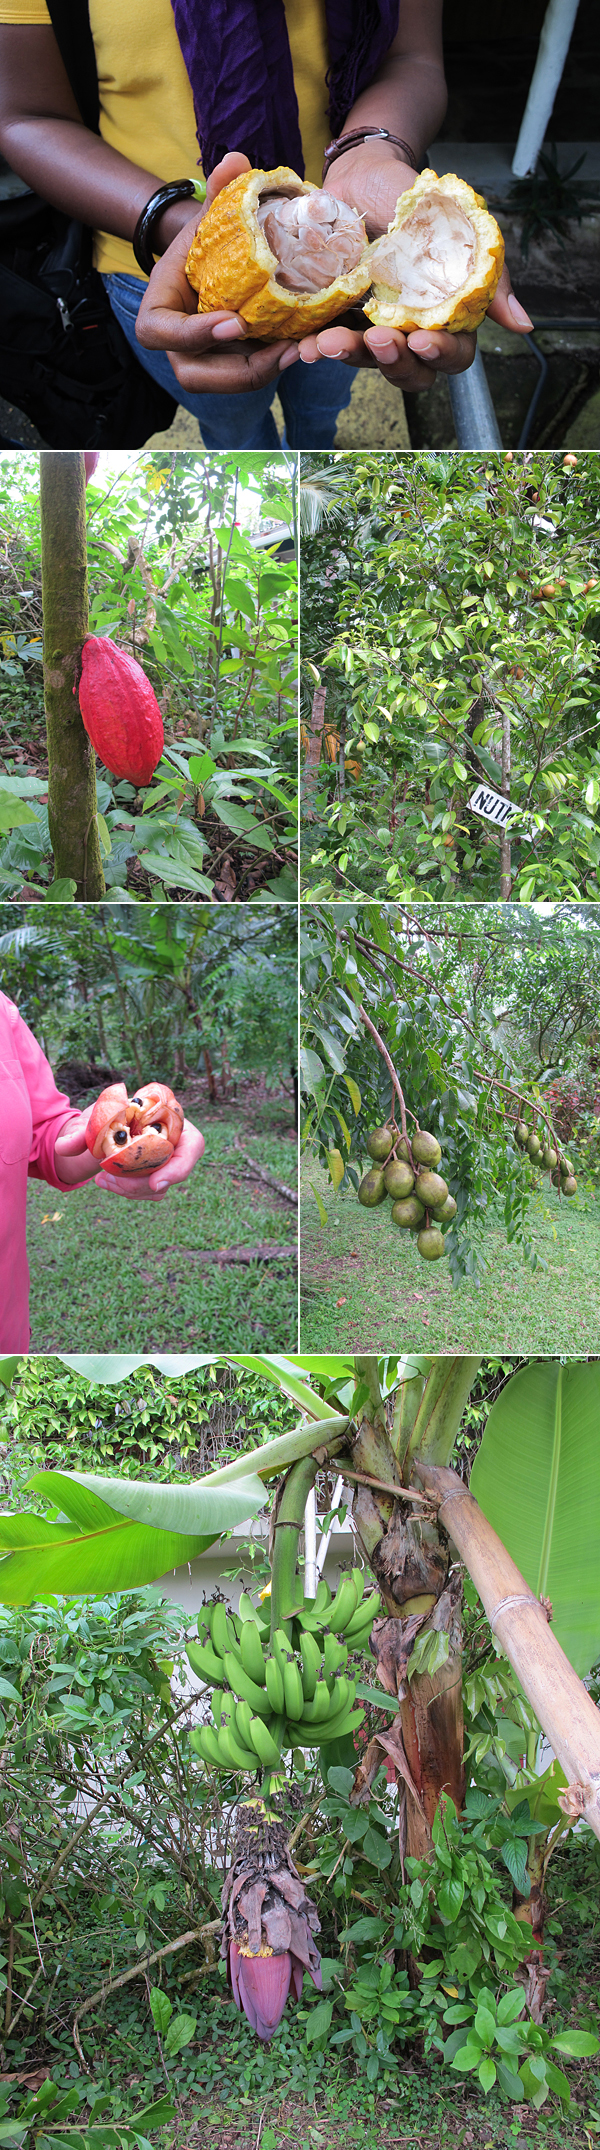 spice plantation jamaica